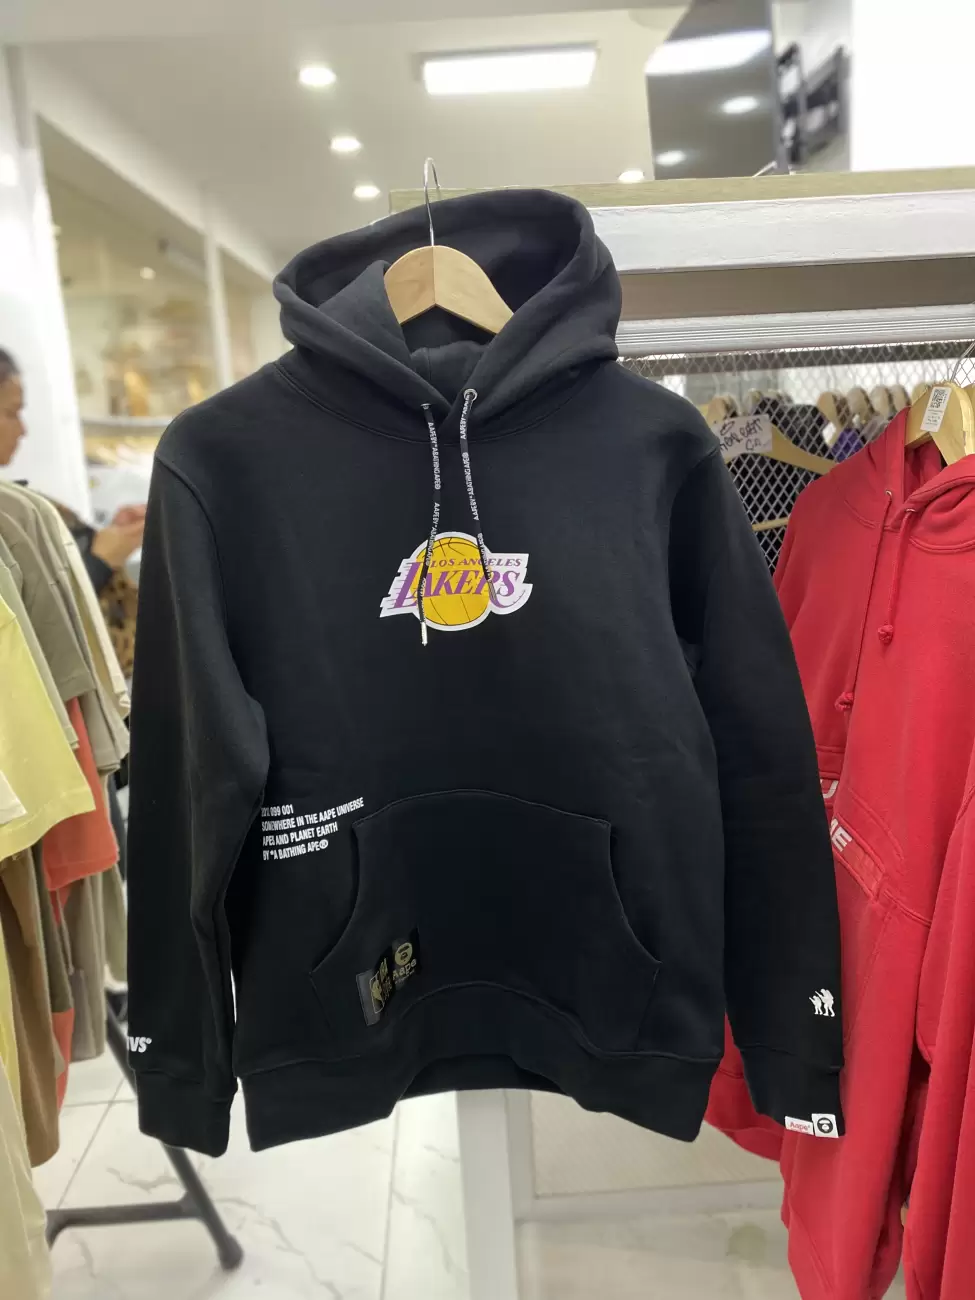 aape lakers hoodie